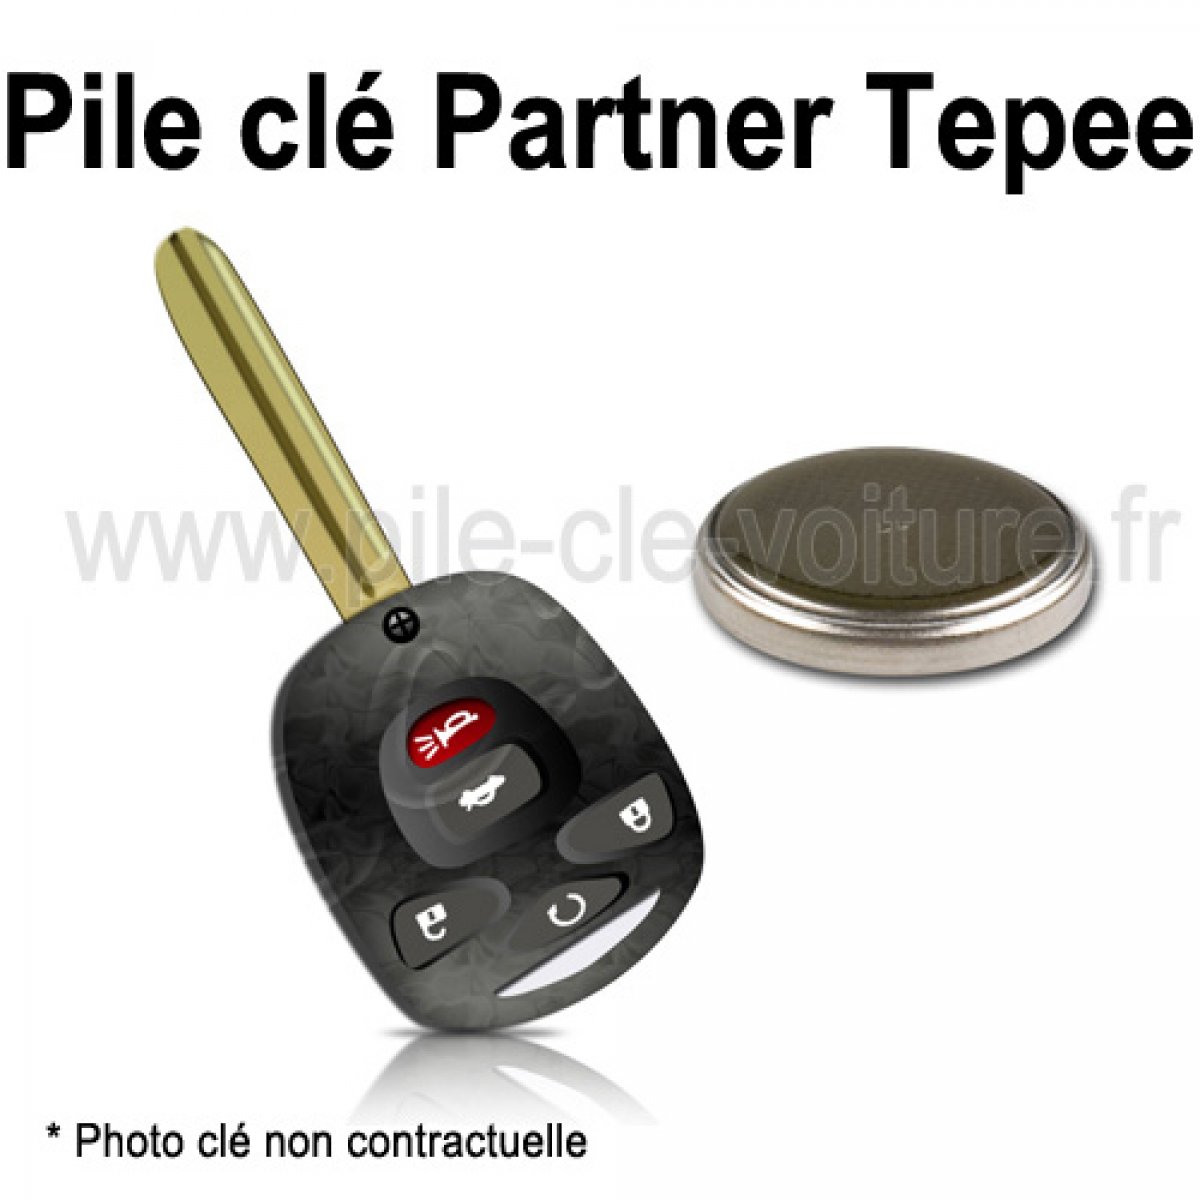 Pile pour clé Partner Tepee - Peugeot - changement de la pile de